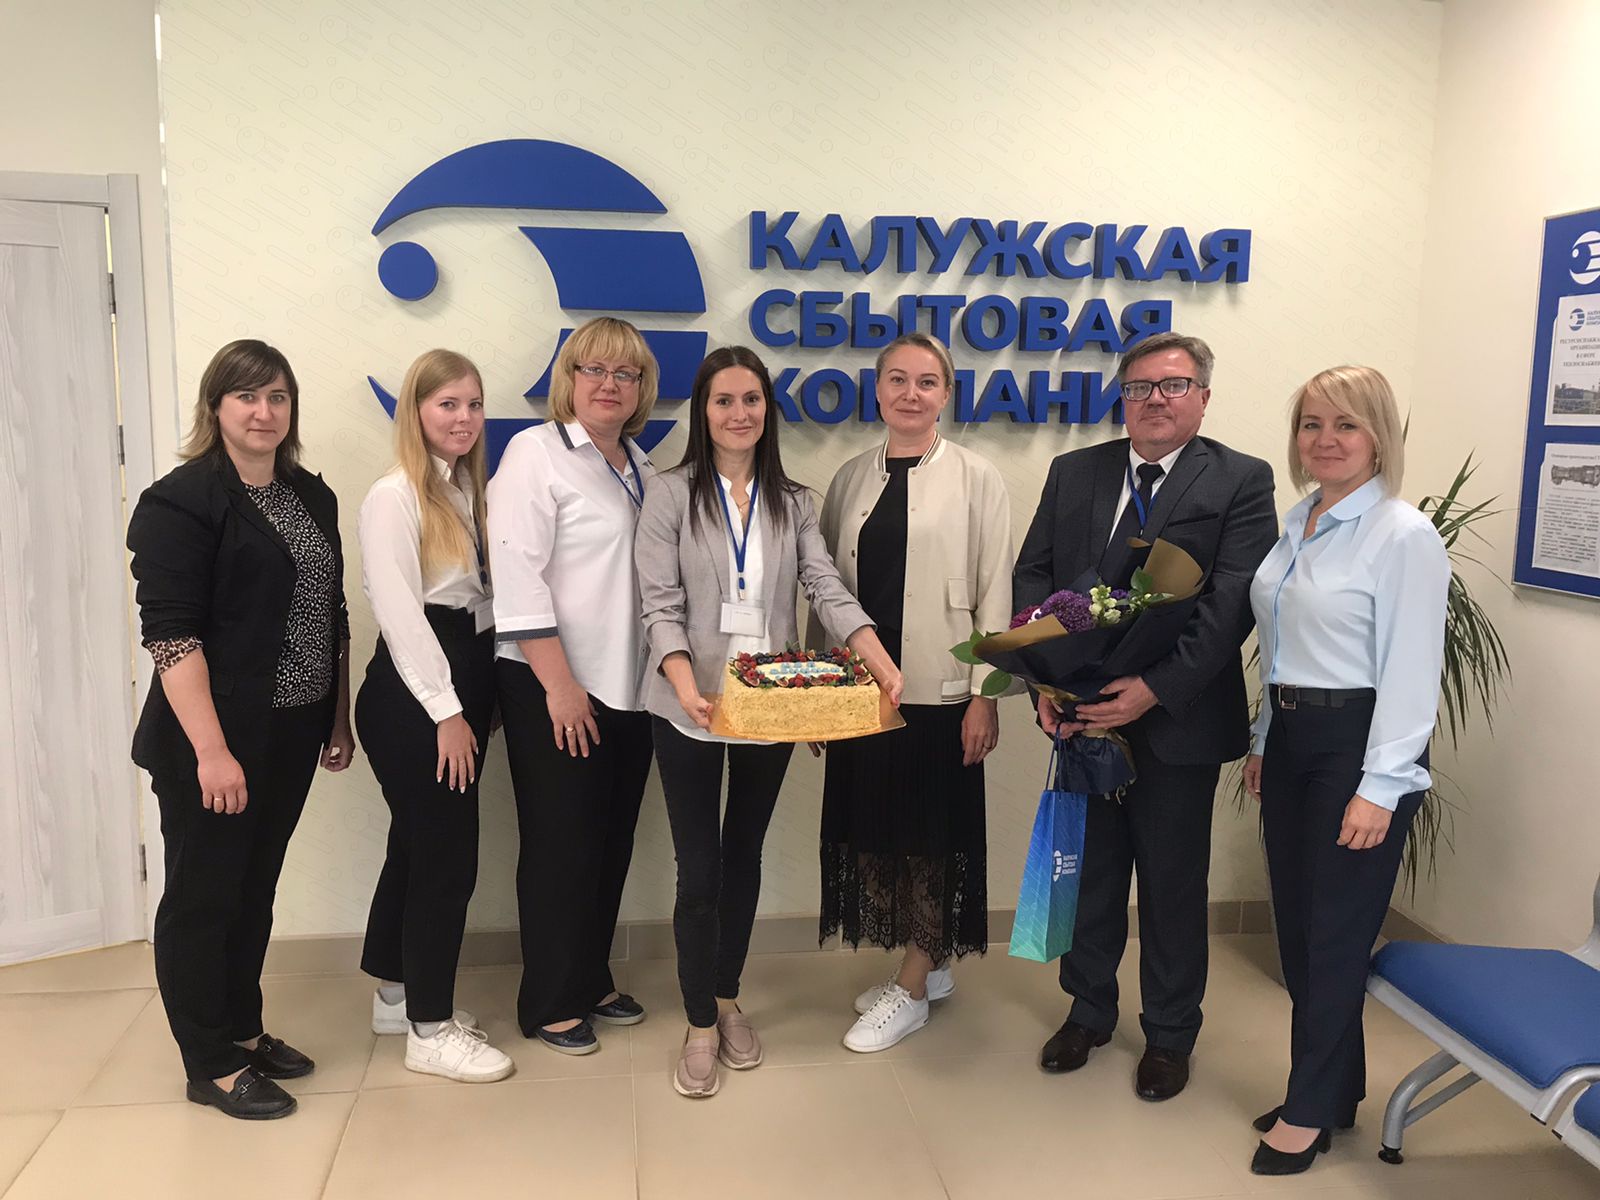 Центр обслуживания потребителей Калужской сбытовой компании г. Обнинска отмечает свой первый День рождения